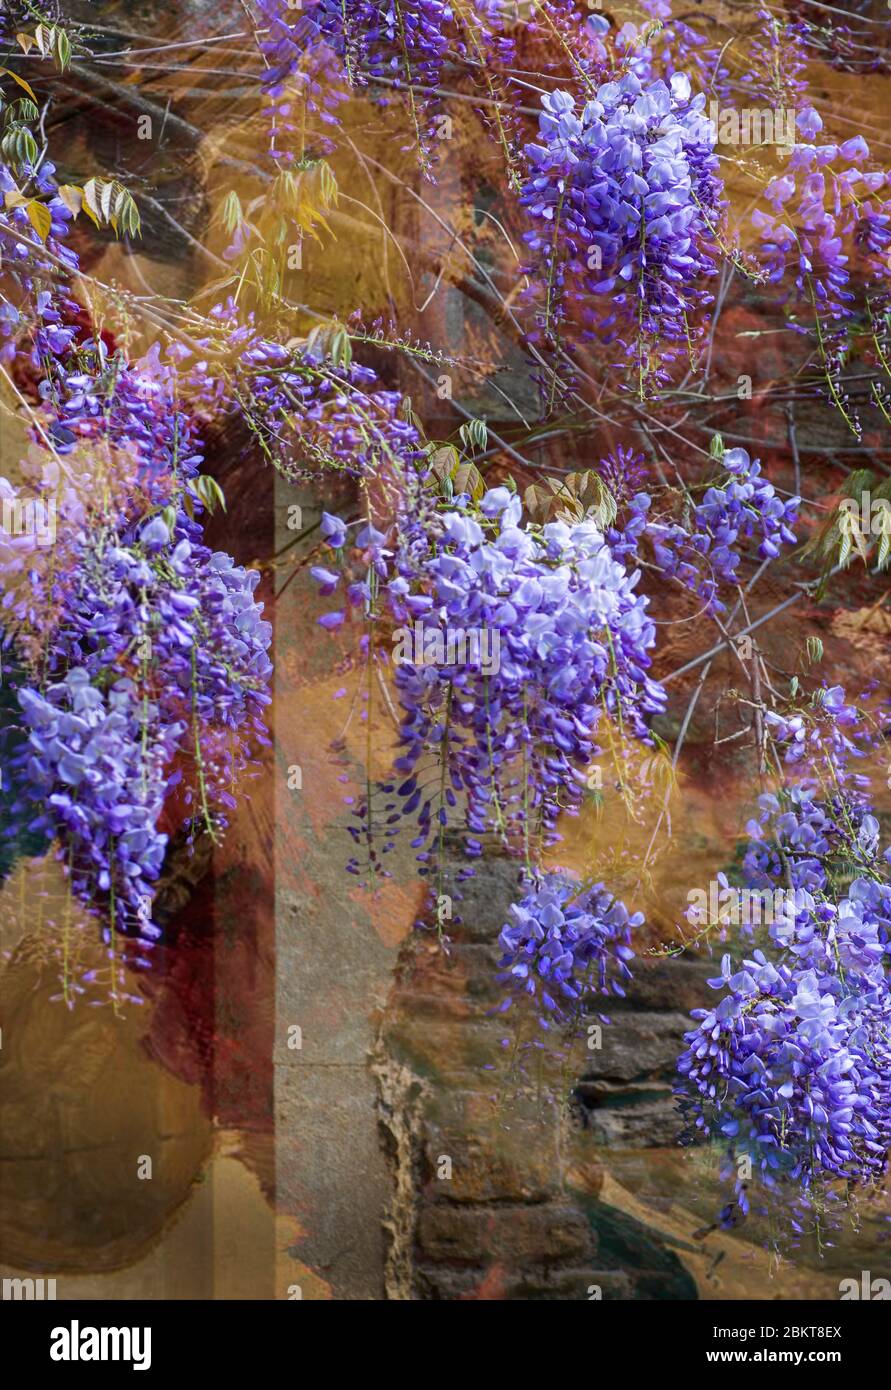 La Wisteria è una grande pianta da arrampicata che può vivere a lungo. Produce una profusione di fiori blu che pendono in una grande massa in primavera Foto Stock